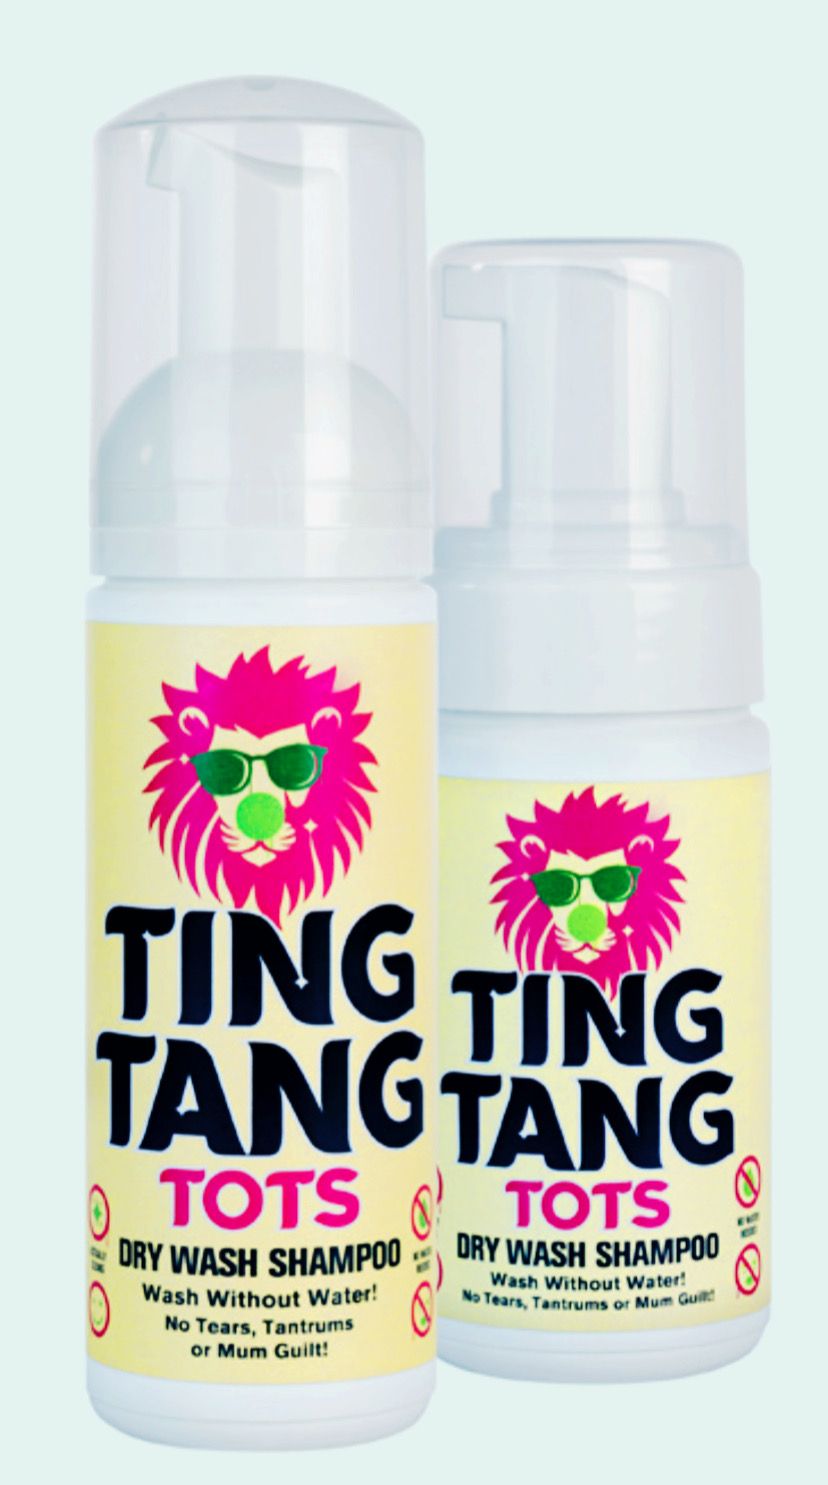 TingTang Tots - Dry Wash Shampoo